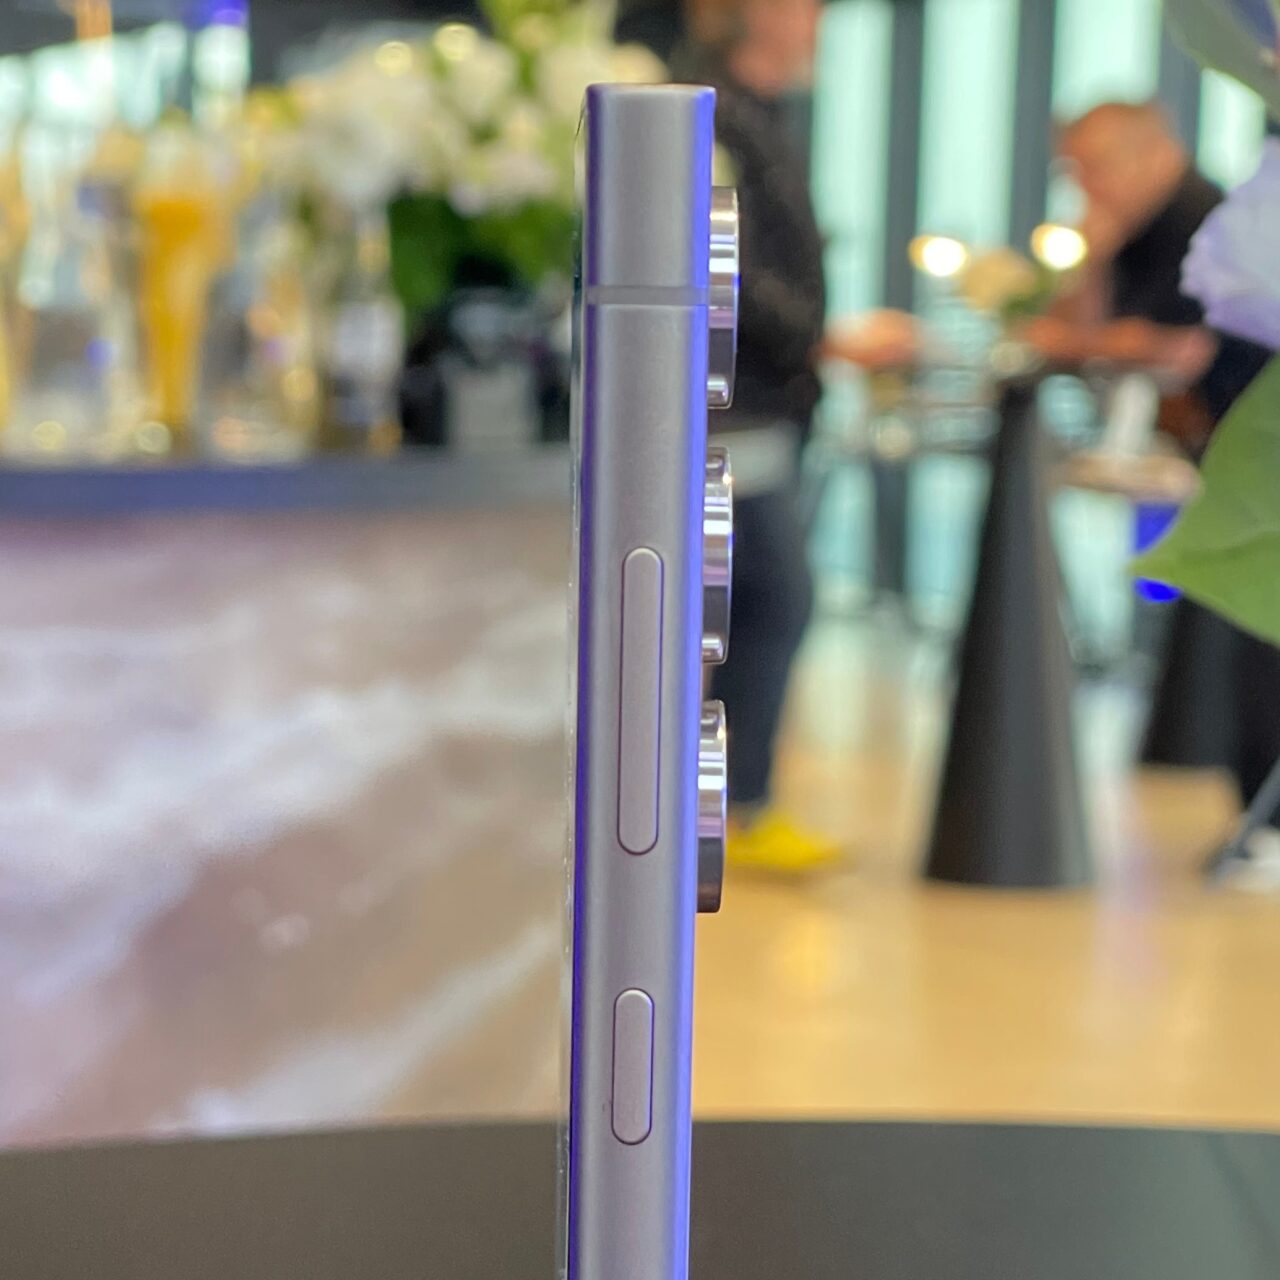 Zbliżenie na fioletowy smartphone stojący pionowo na stole z rozmytym tłem, na którym widać ludzi i bar.